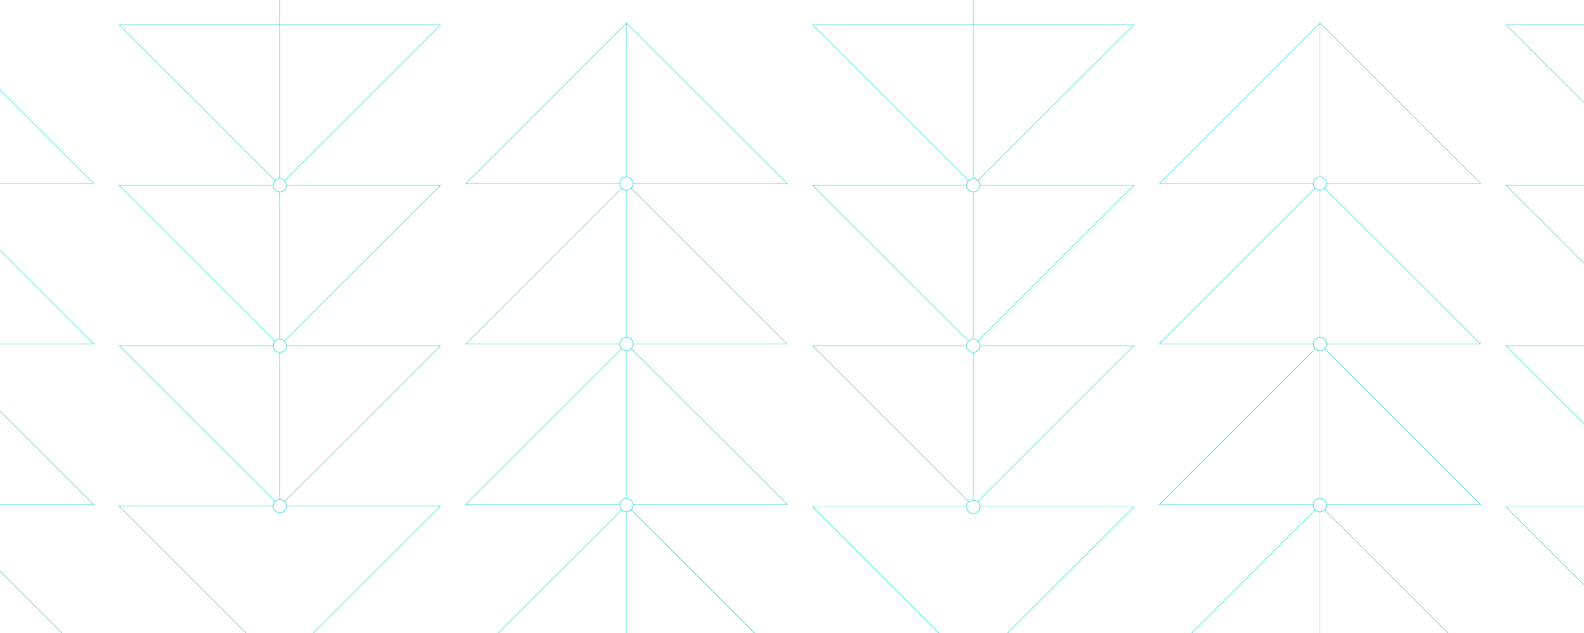 섬세한 삼각형 패턴을 형성하는 얇은 파란색 선을 보여 주는 일러스트